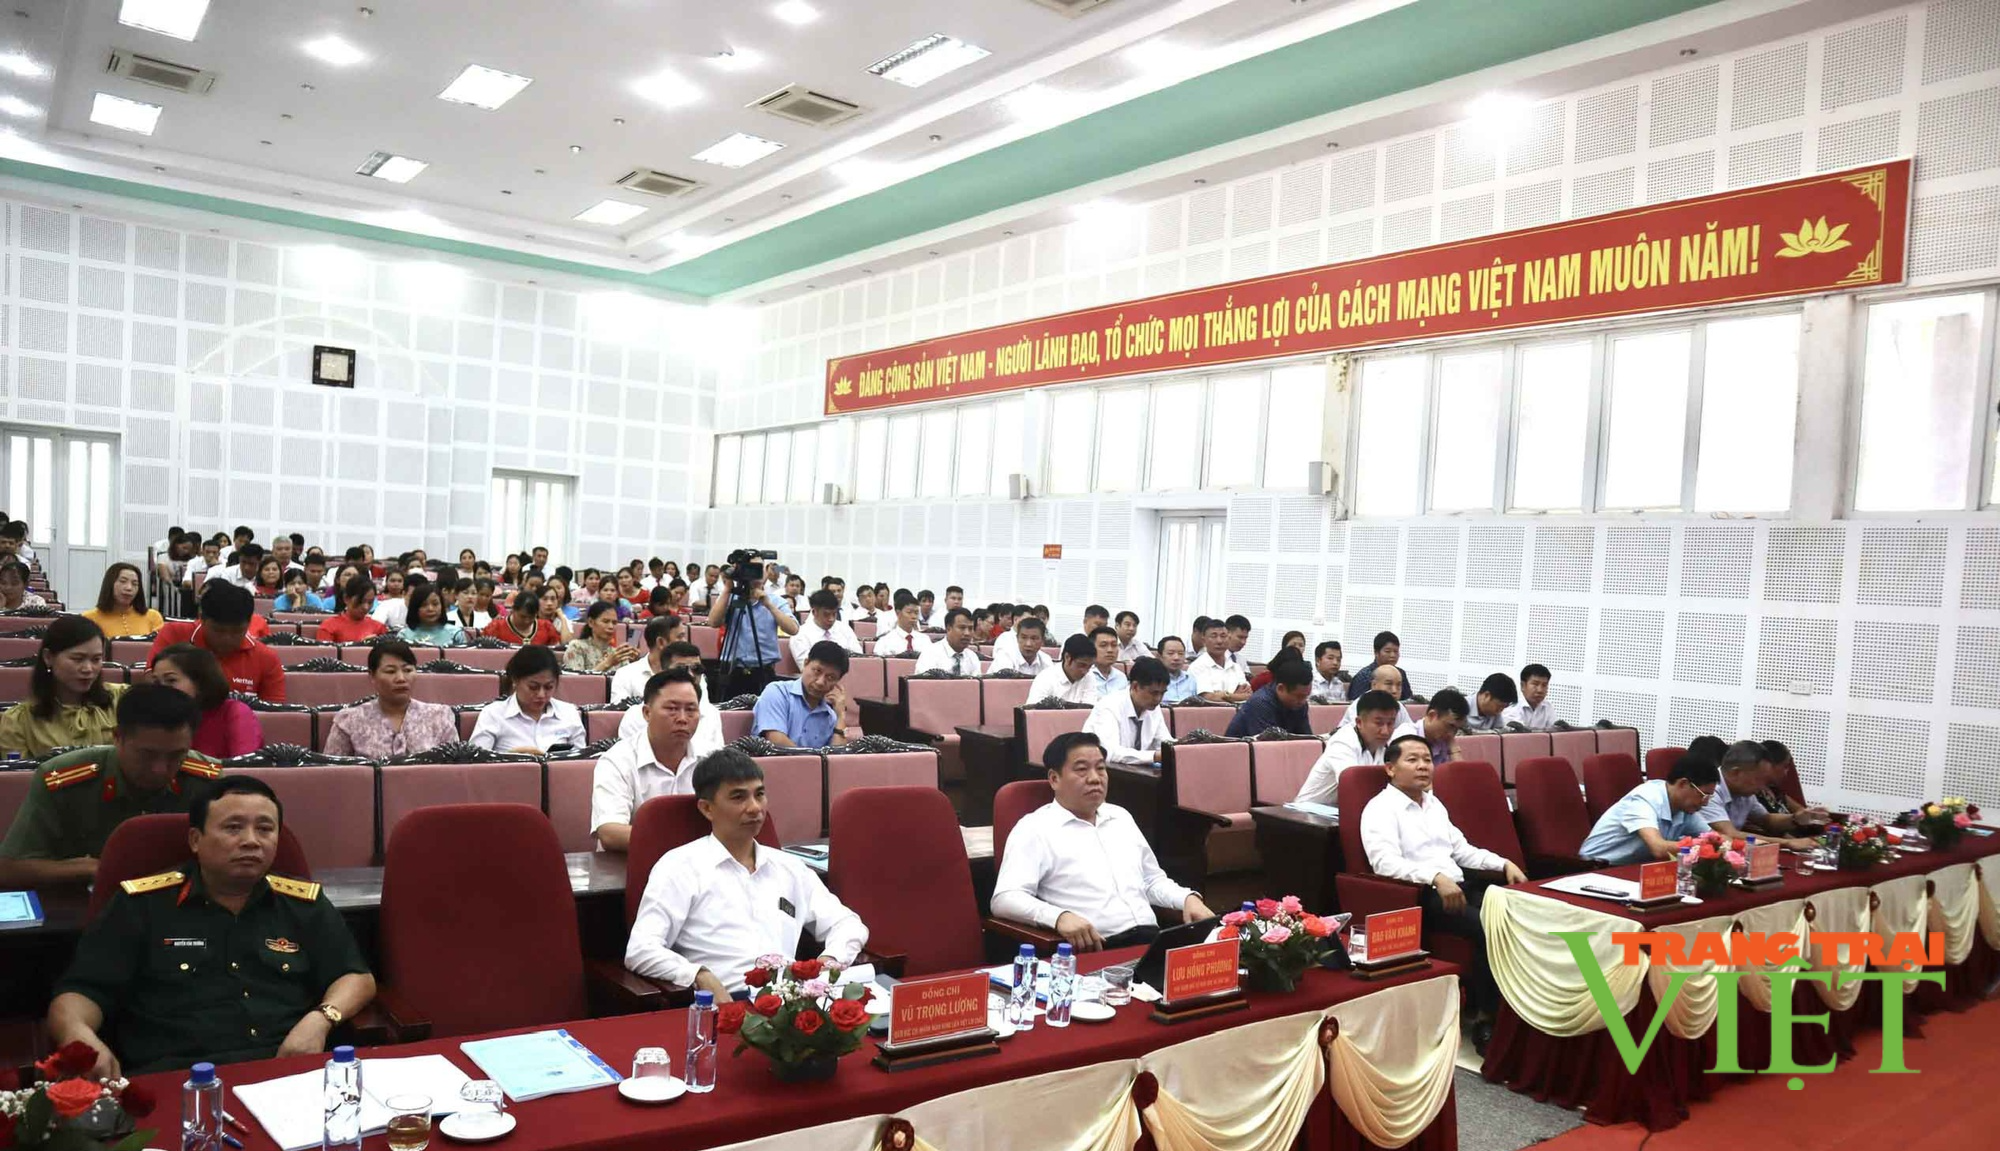 Lai Châu: Tỷ lệ trường đạt chuẩn quốc gia của huyện biên giới Mường Tè chiếm hơn 56% - Ảnh 1.